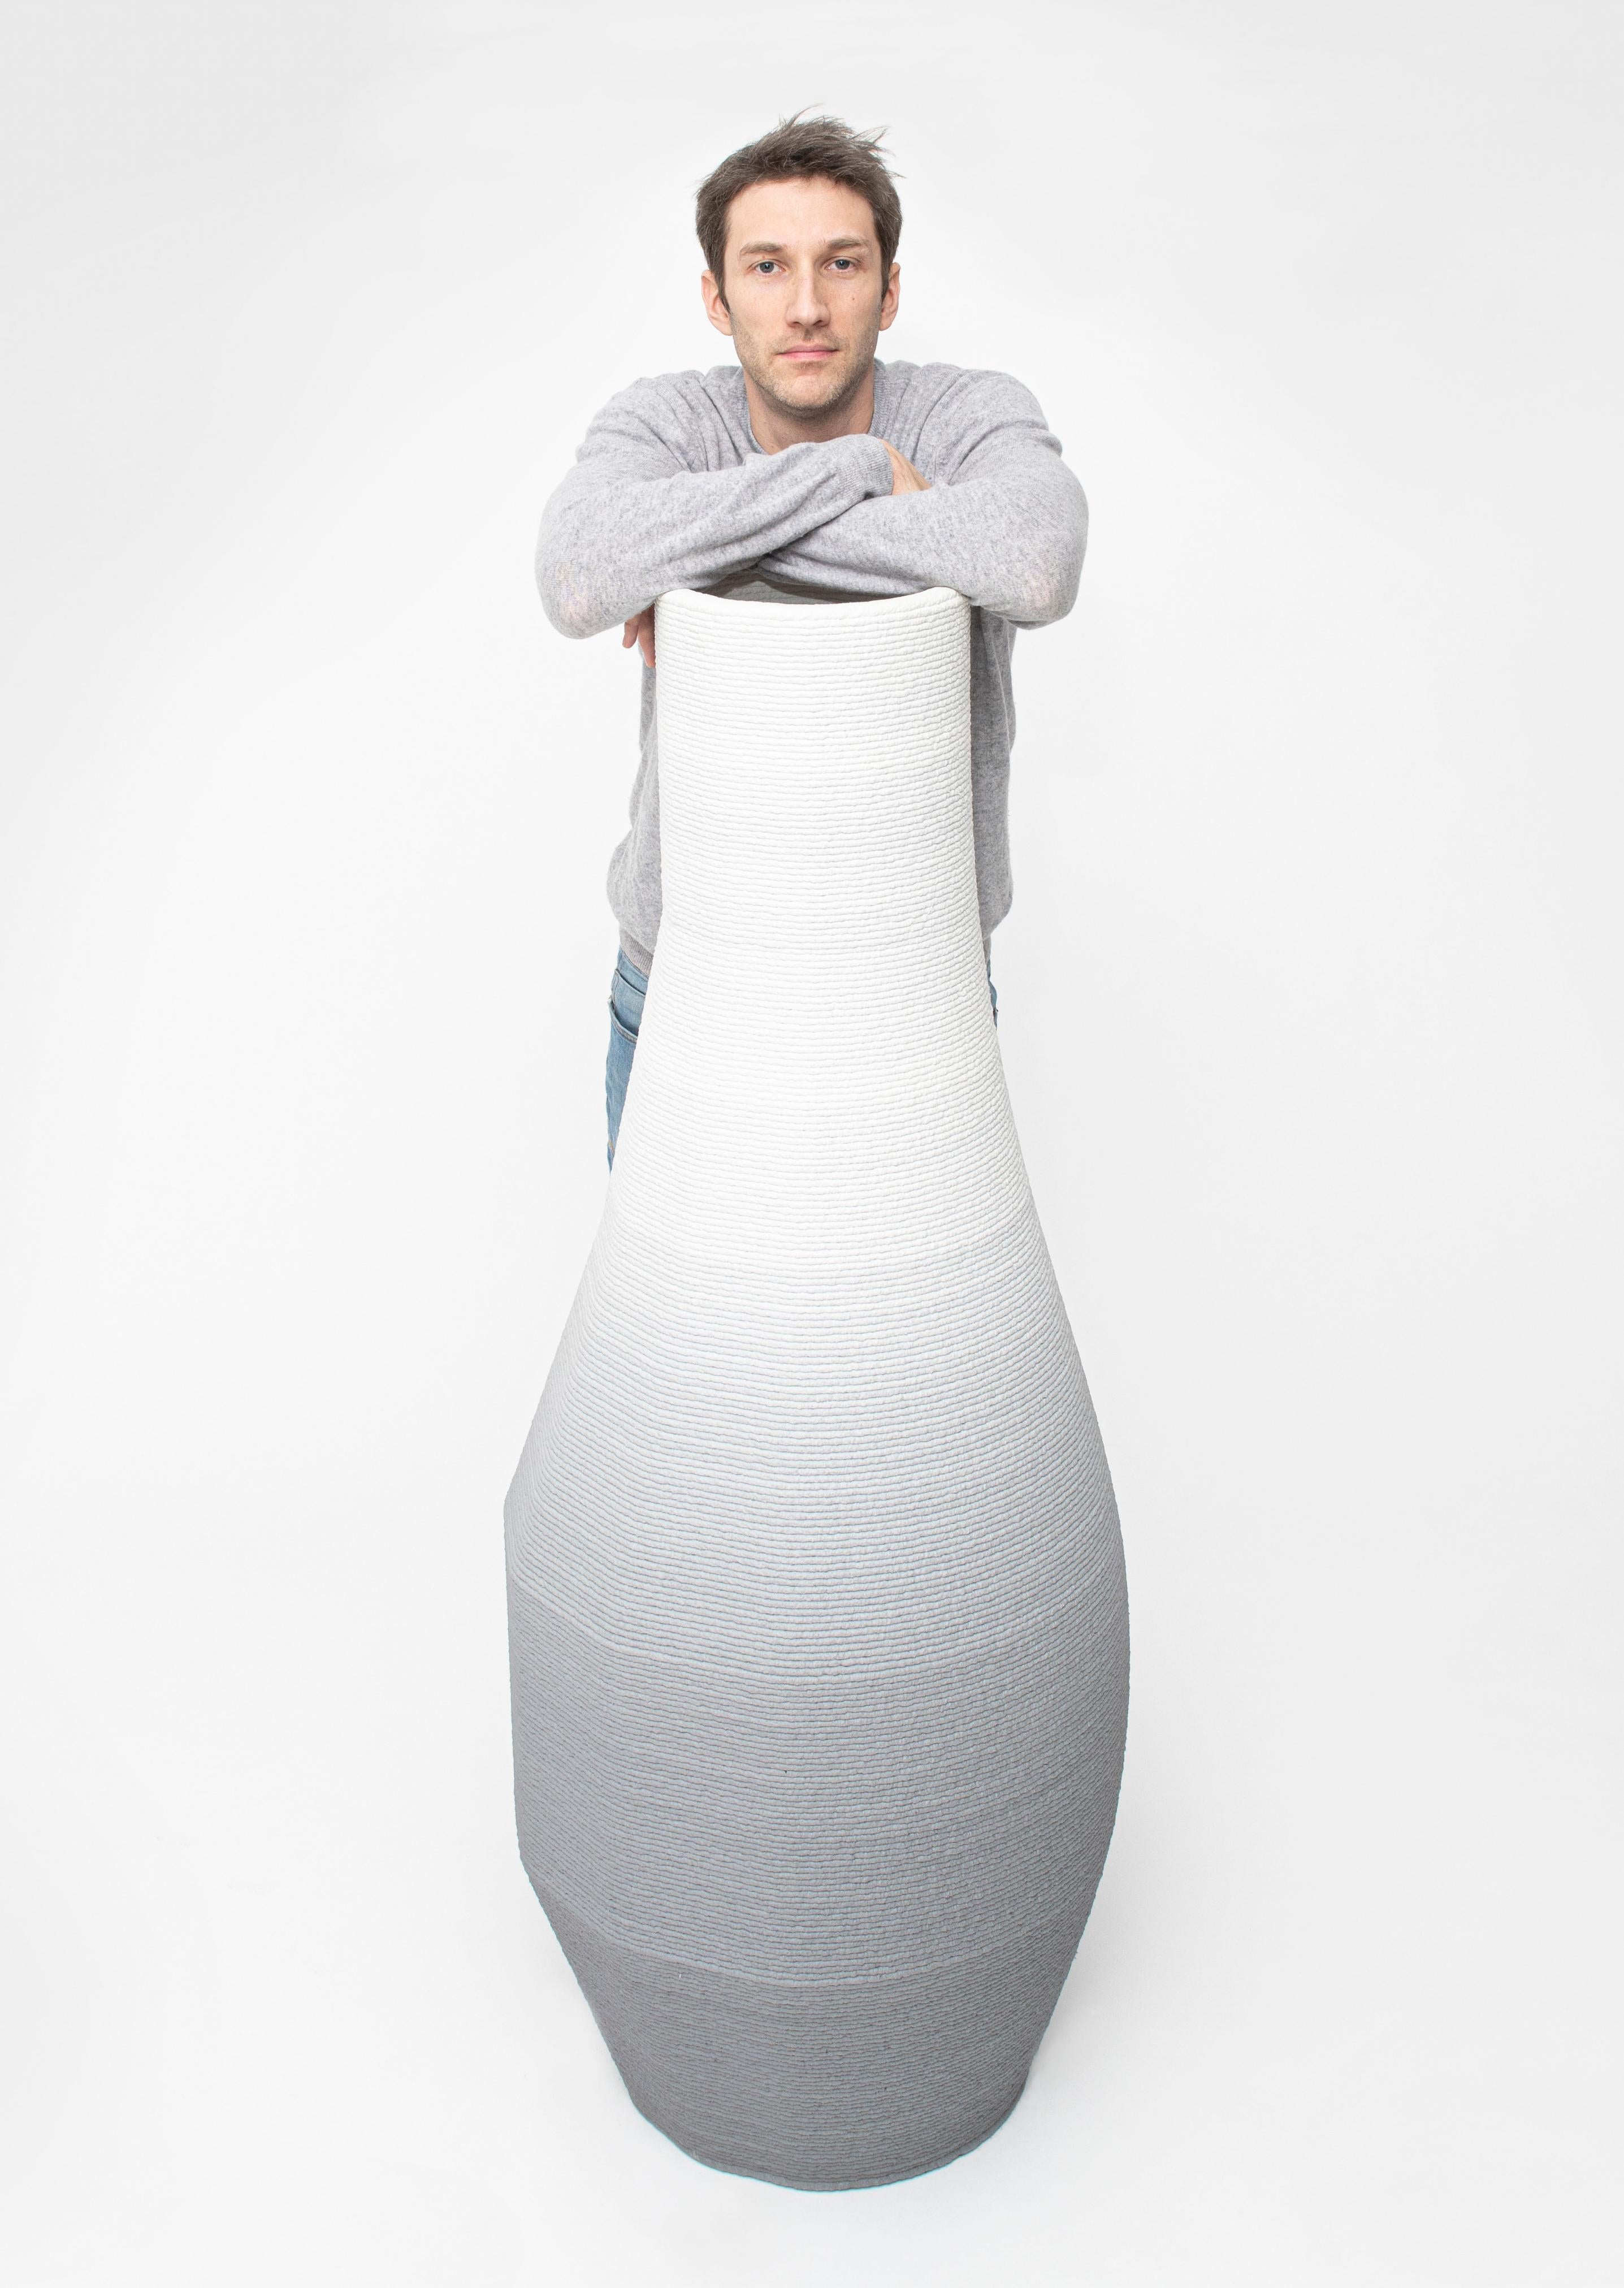 Large Concrete Gradient Vase by Philipp Aduatz 5